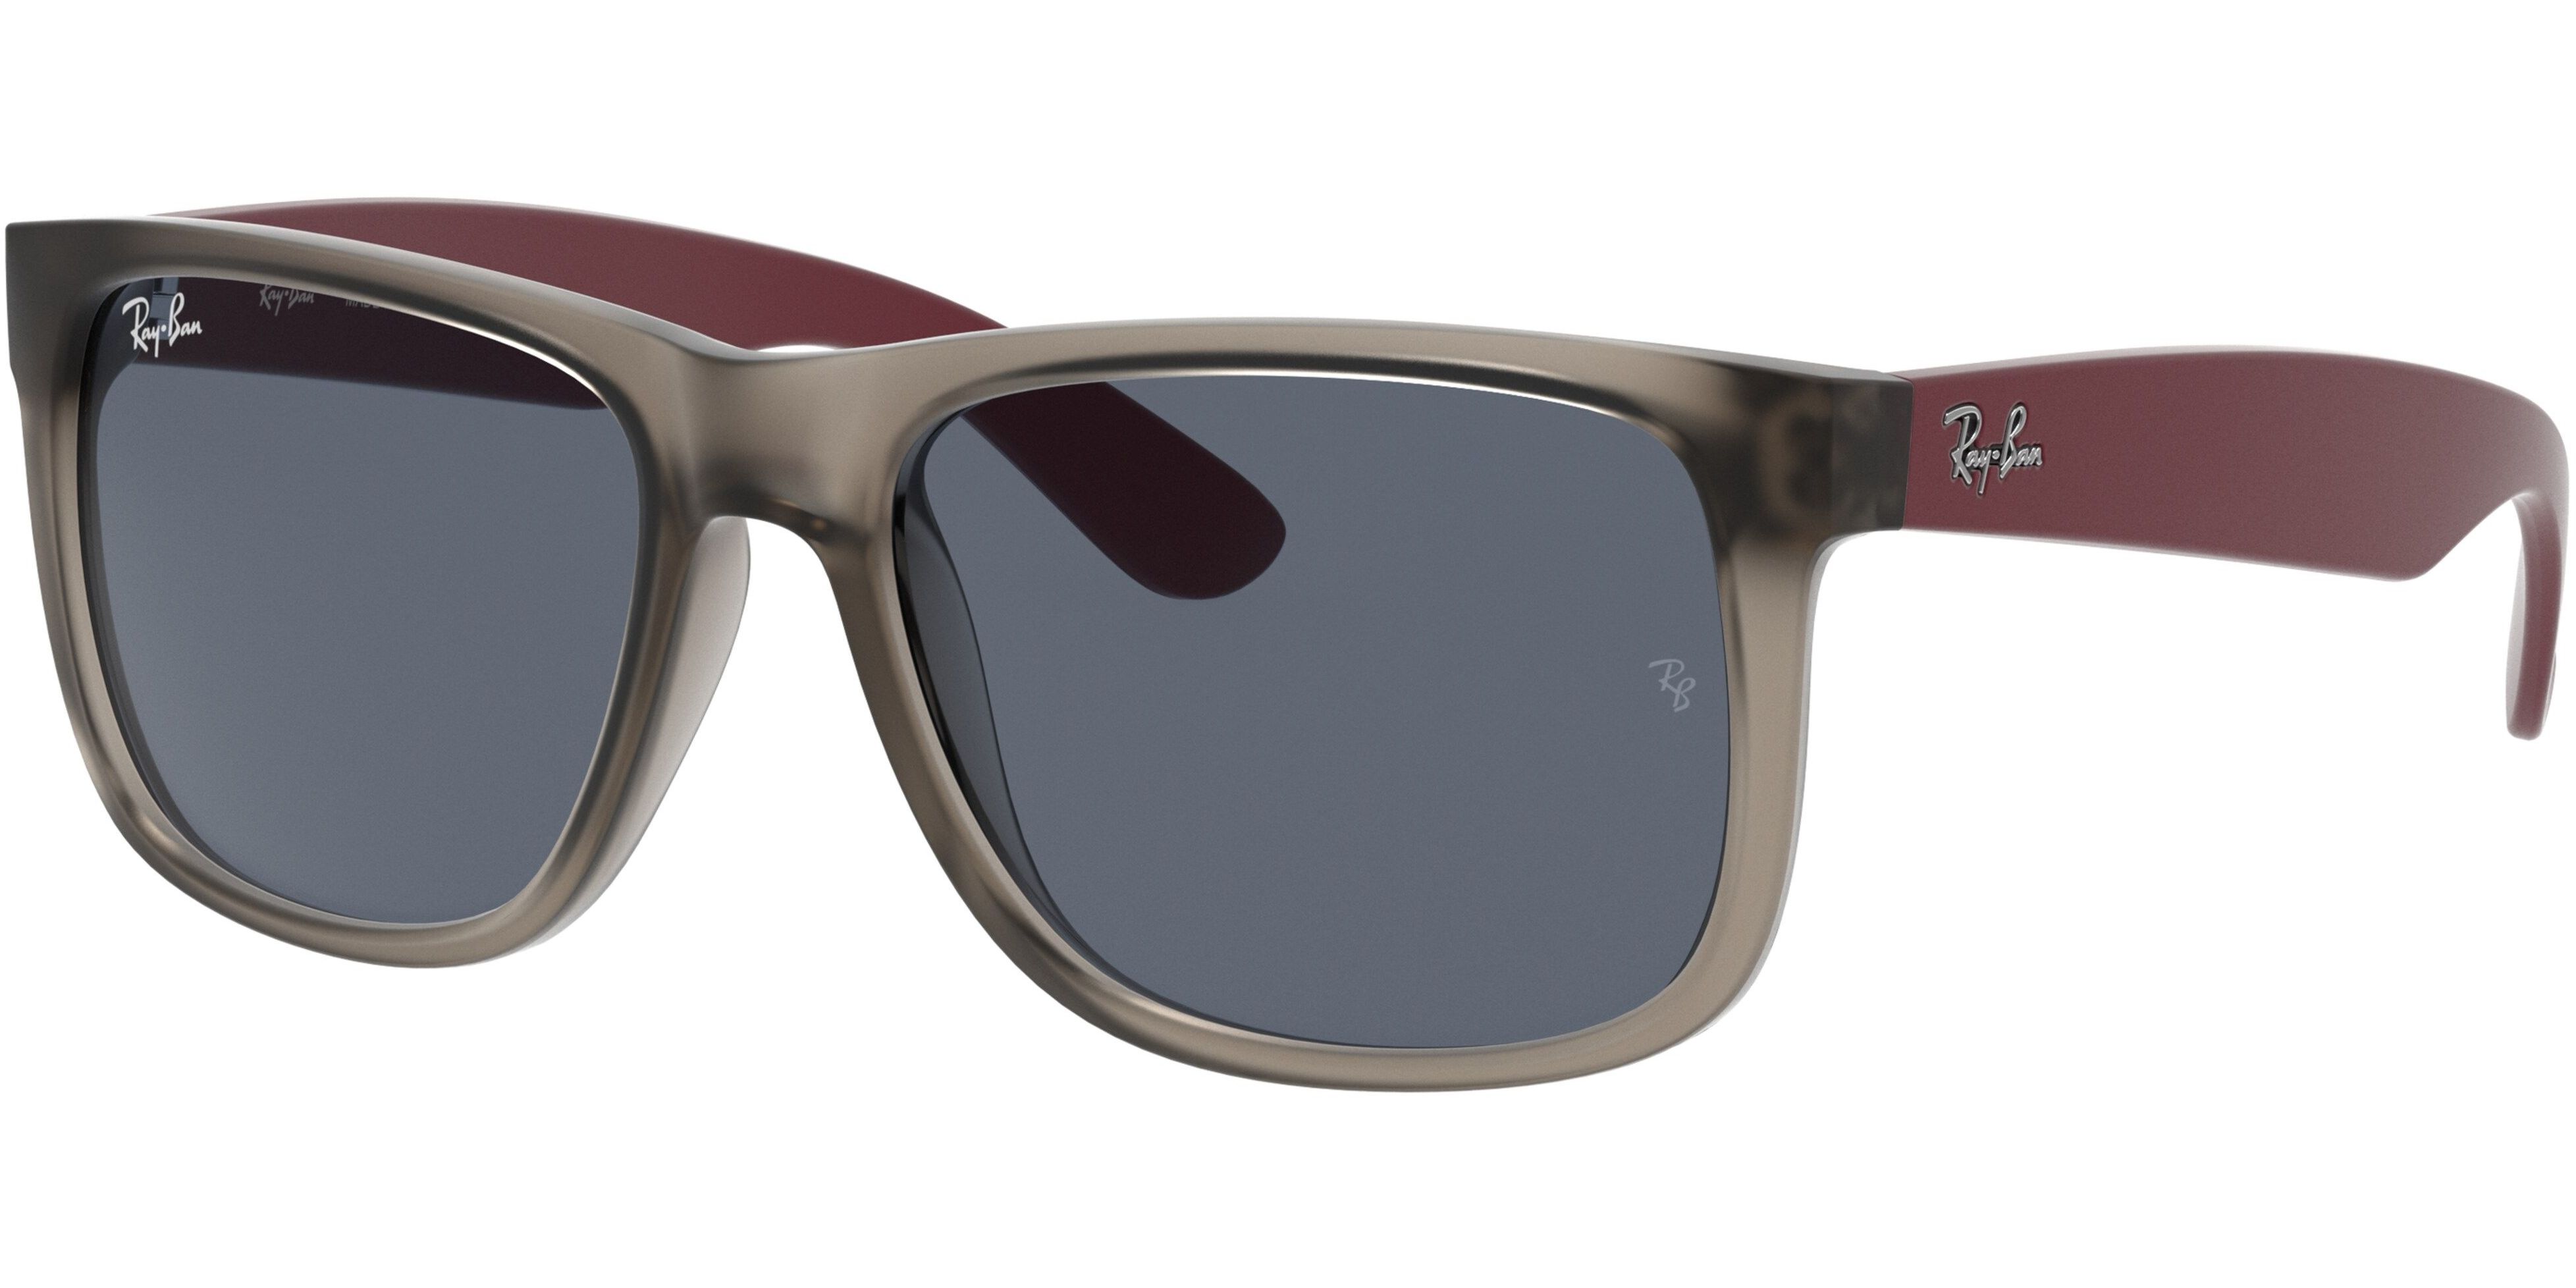 Sluneční brýle Ray-Ban® model 4165, barva obruby šedá mat vínová, čočka šedá, kód barevné varianty 650987. 